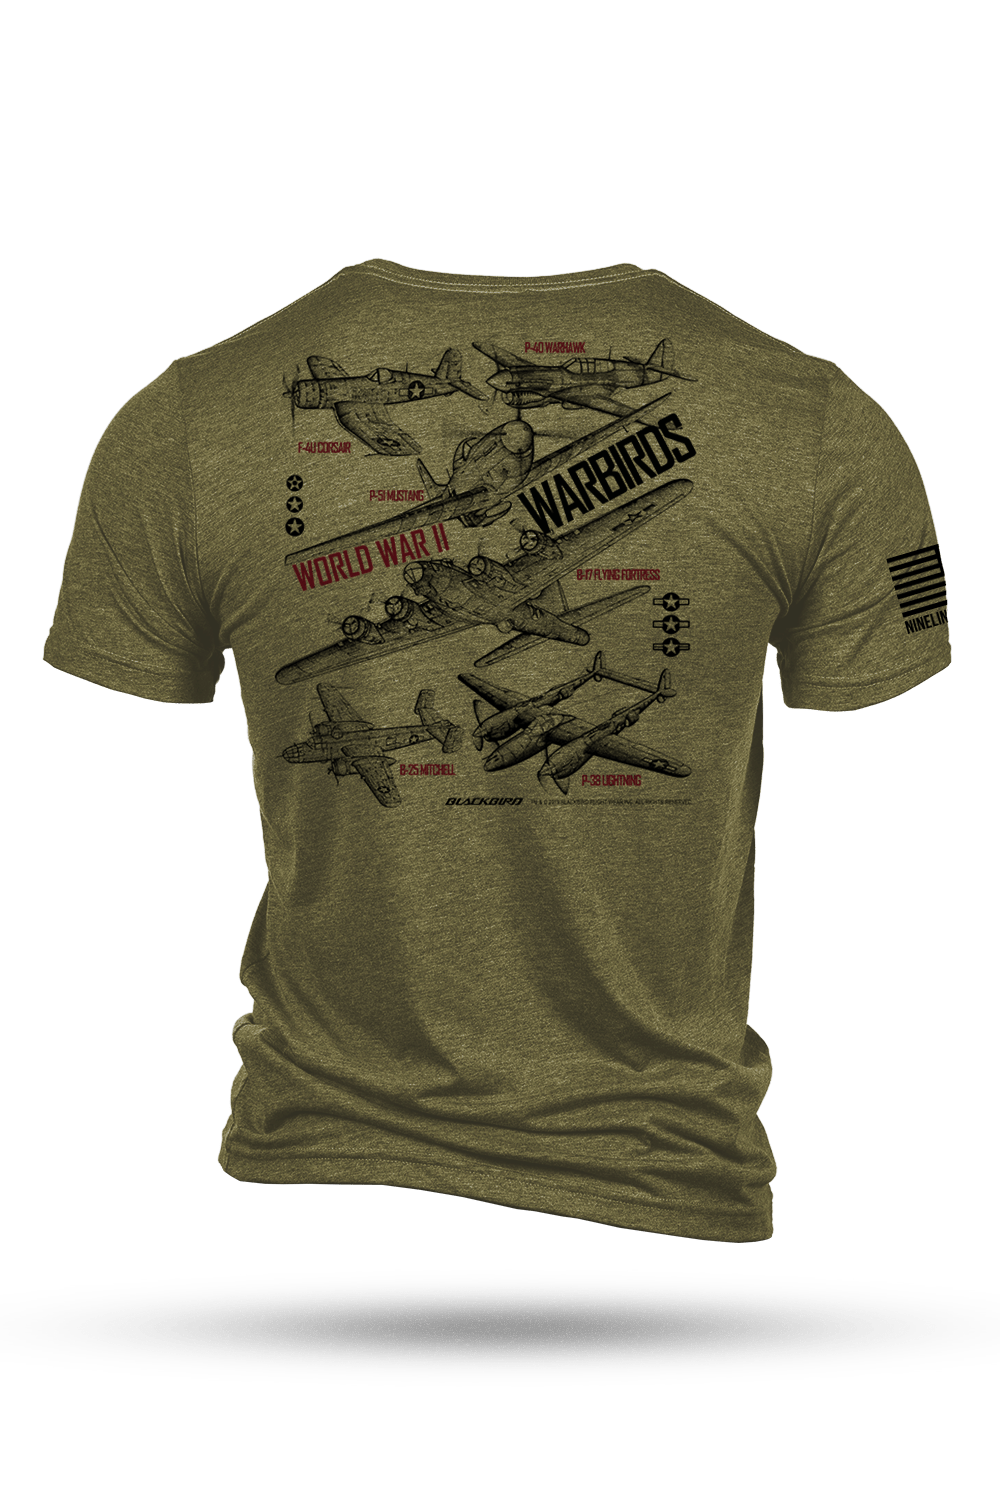 T - Shirt - Blackbird - WW2 WARBIRDS #1